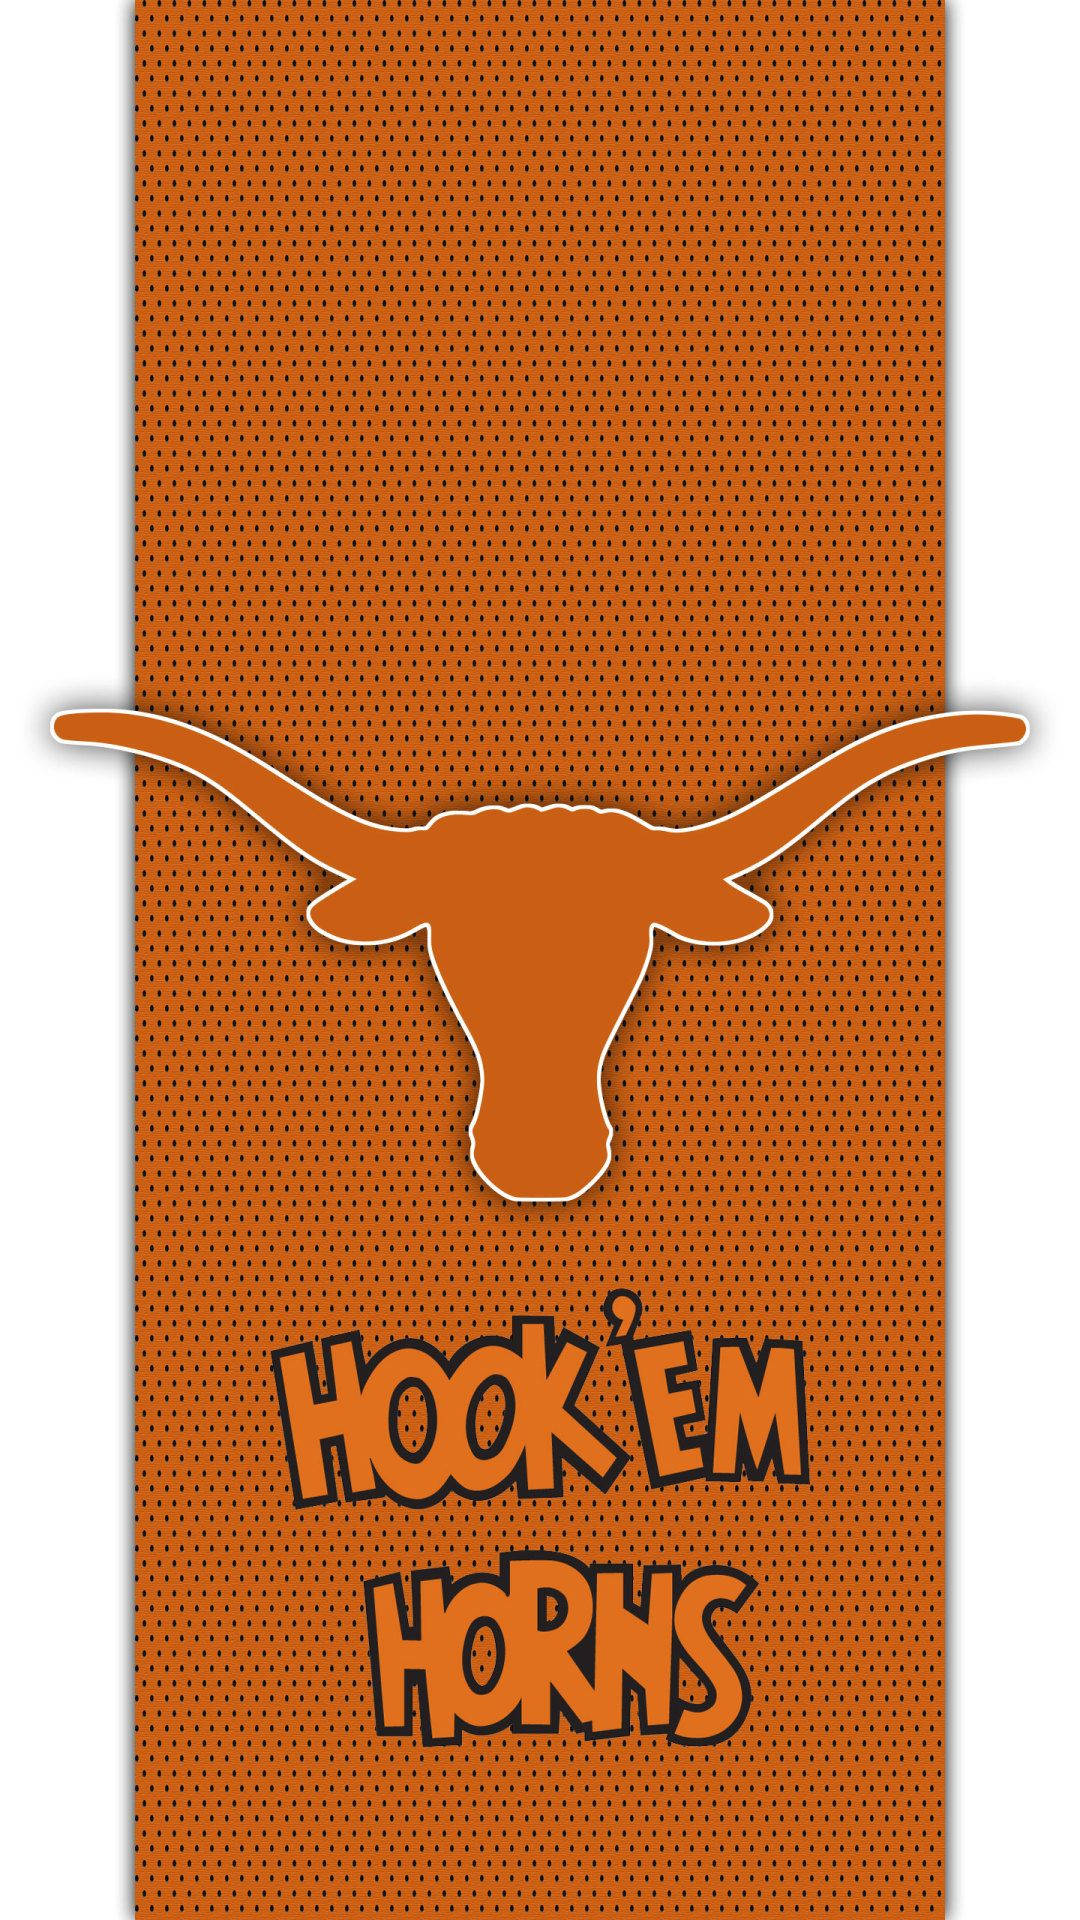 Texas Longhorns Hook Em Horns - Texas Longhorns - Texas Longhorns Wallpaper